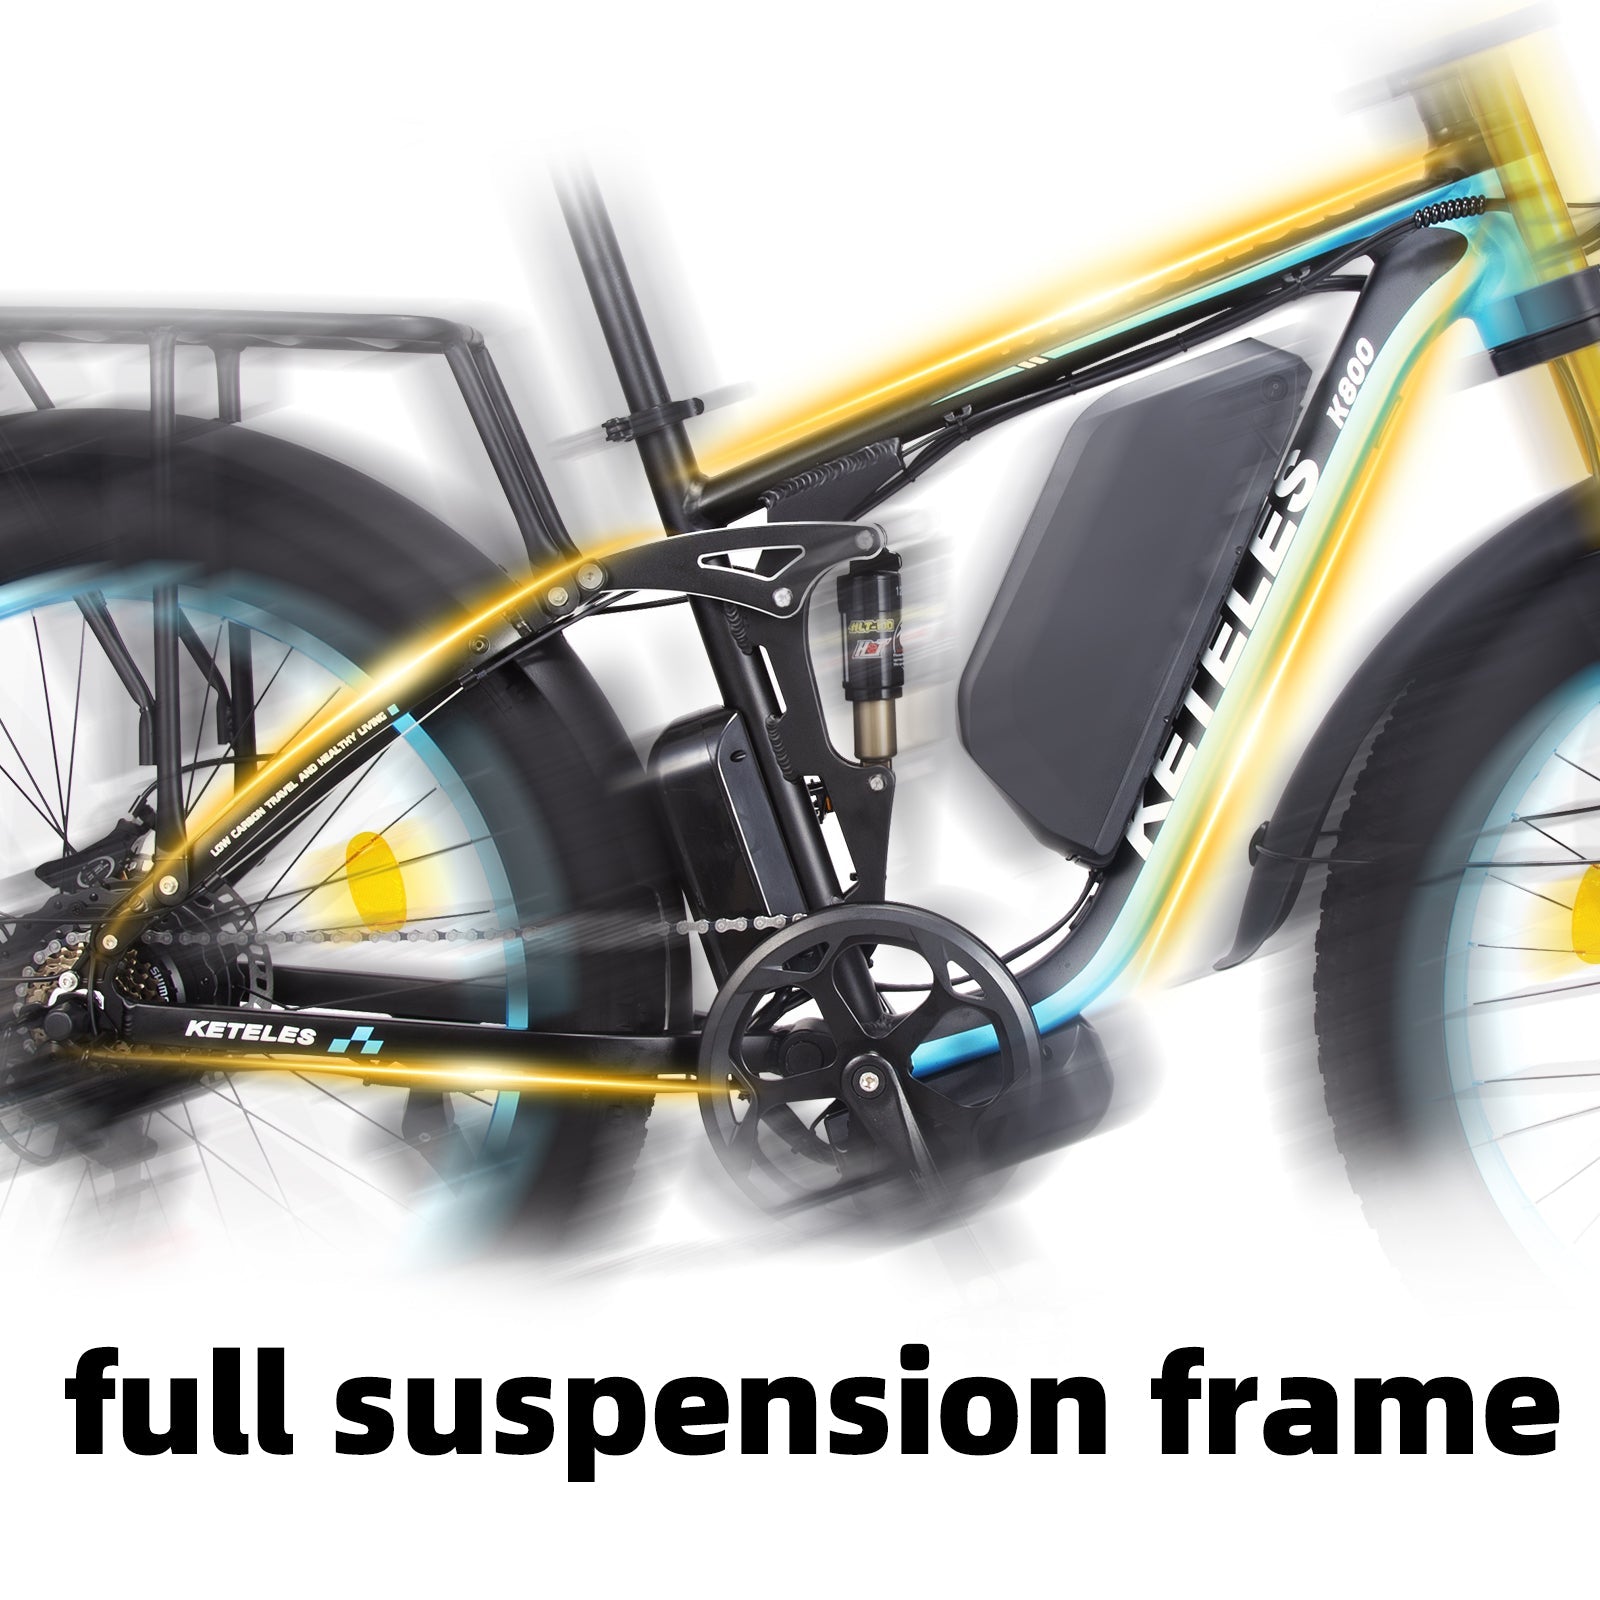 K800P 1000W full suspension frame